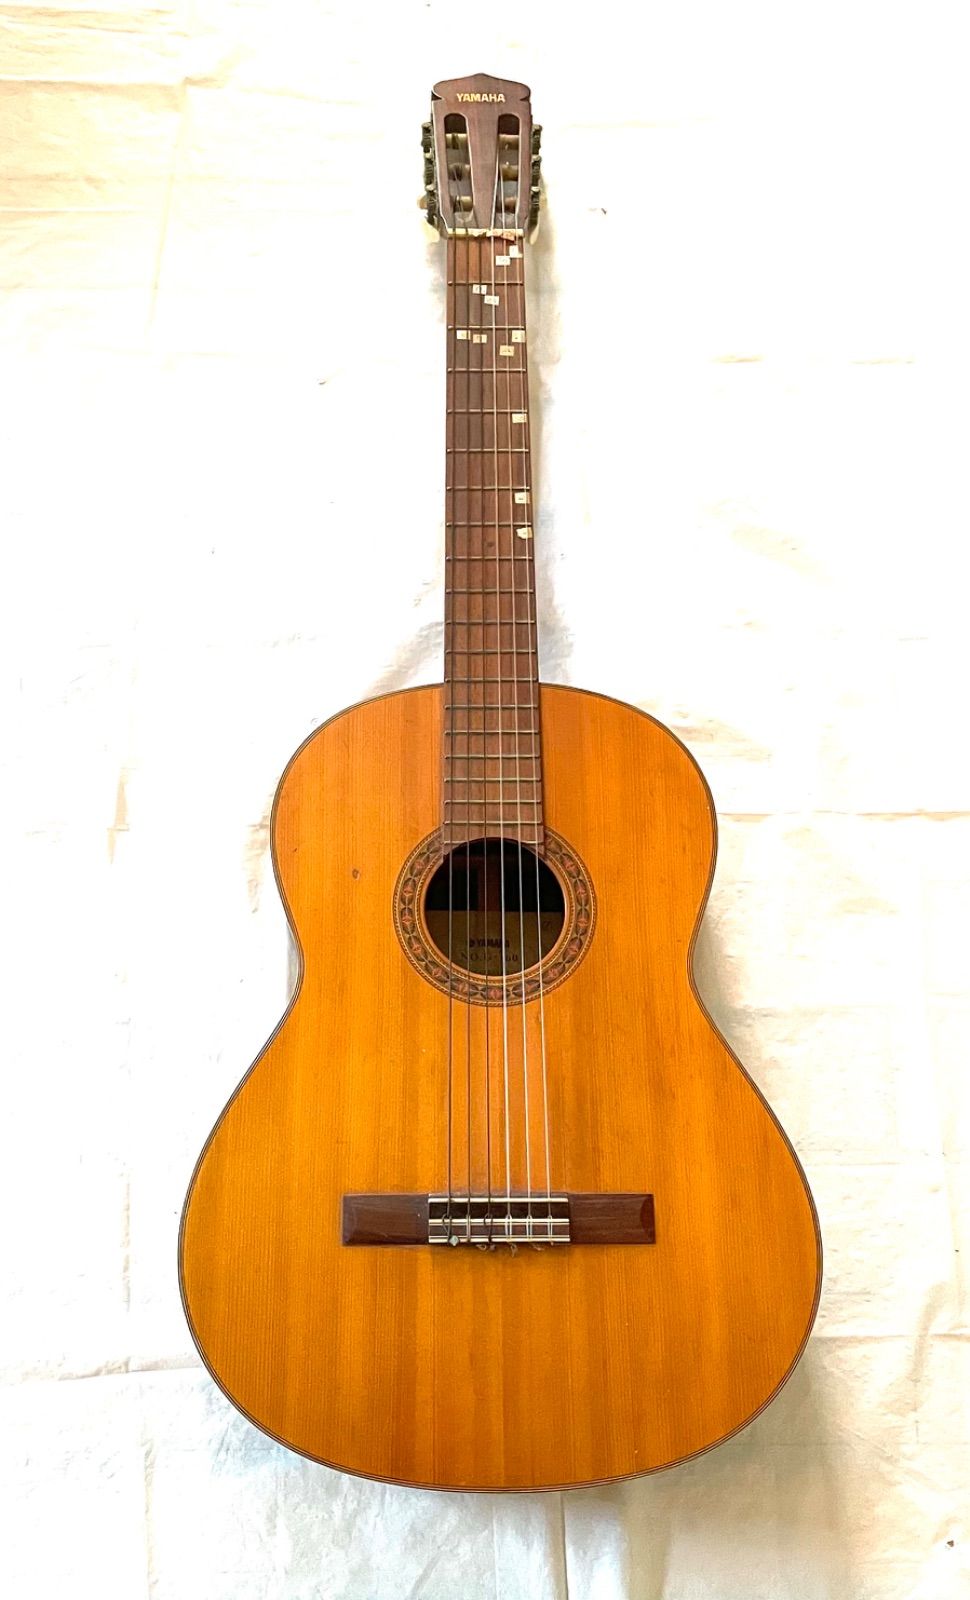 ローズウッドの総単板クラシックギター「YAMAHA NO.G-160」Hケース付-